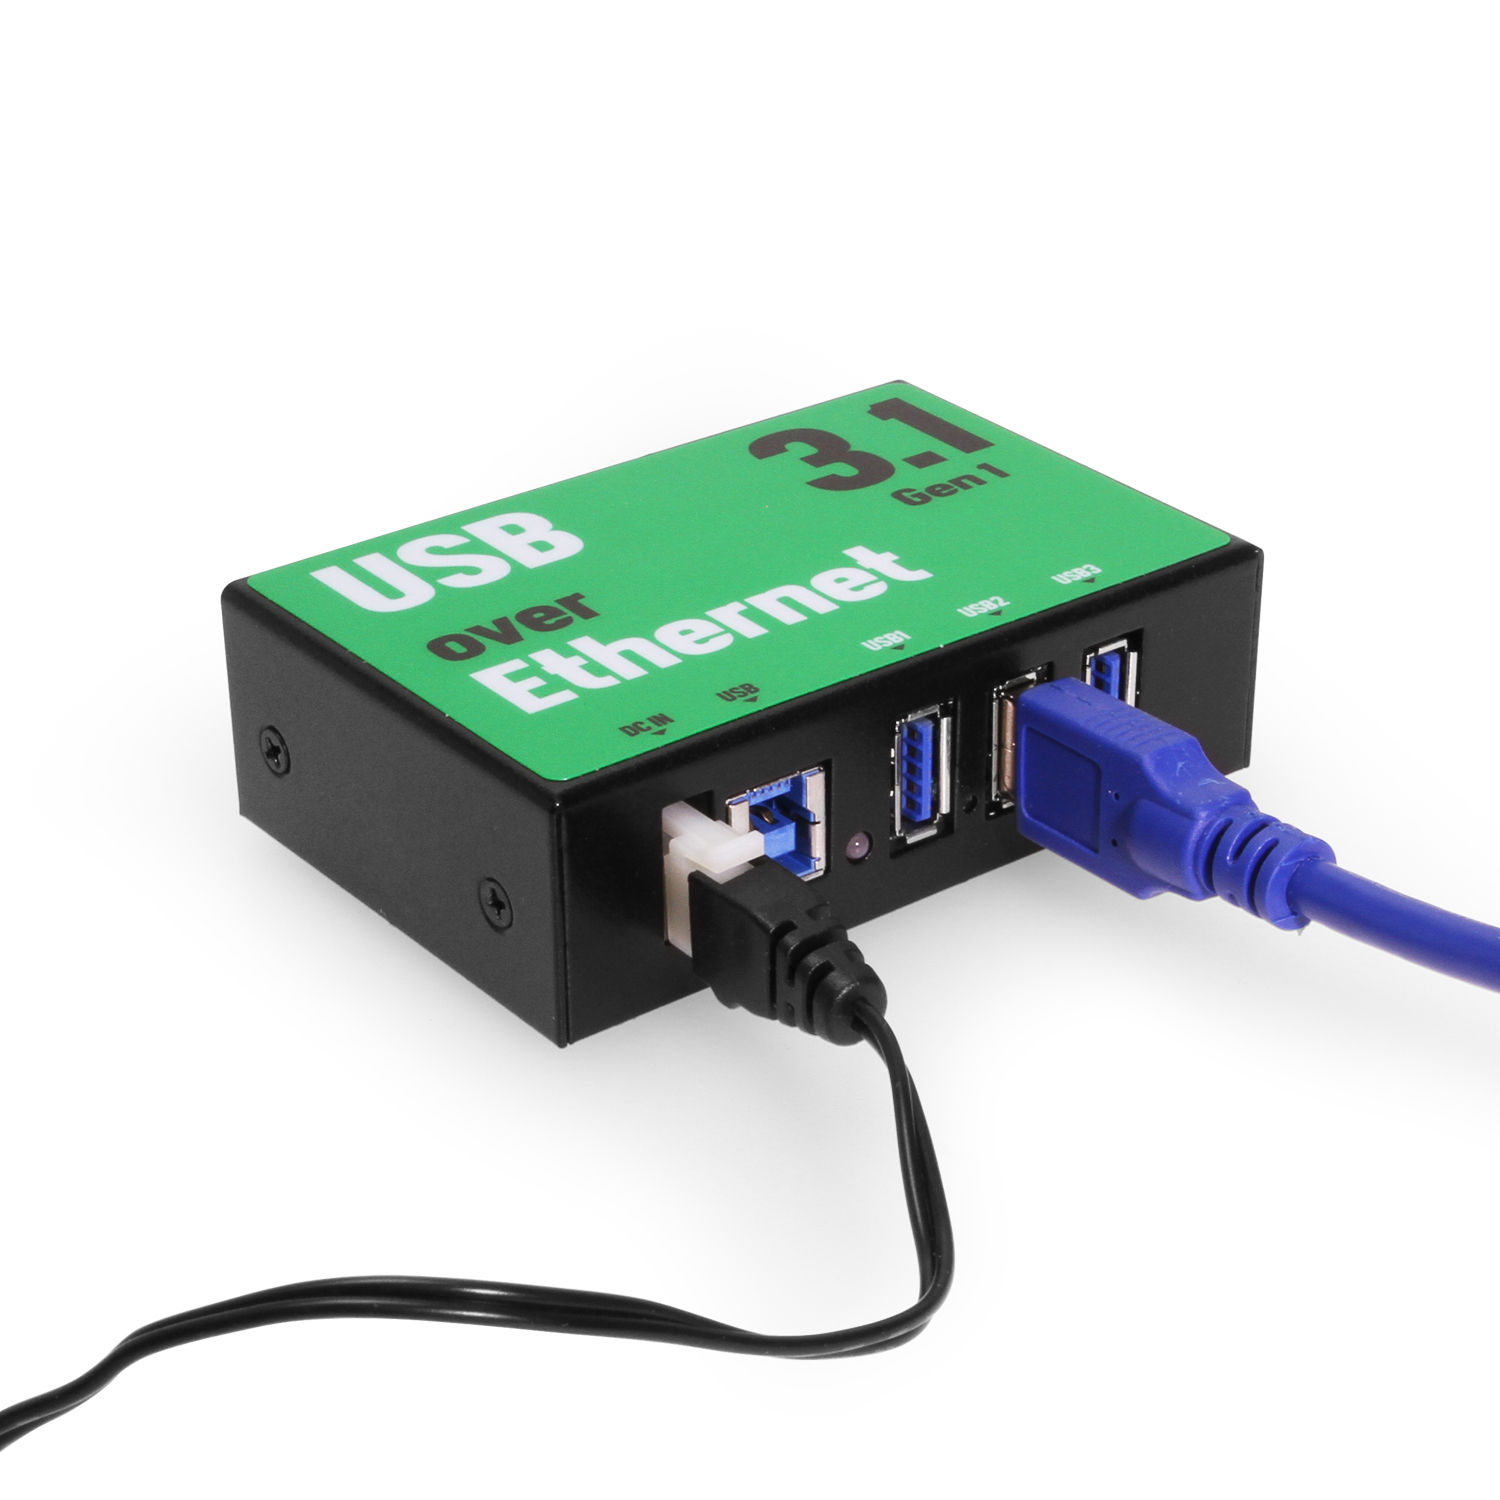 Springe Udseende Shetland 3 Port USB 3.2 Gen 1 Over IP Network Device Sharing Hub w/ Port Status LEDs  - Coolgear